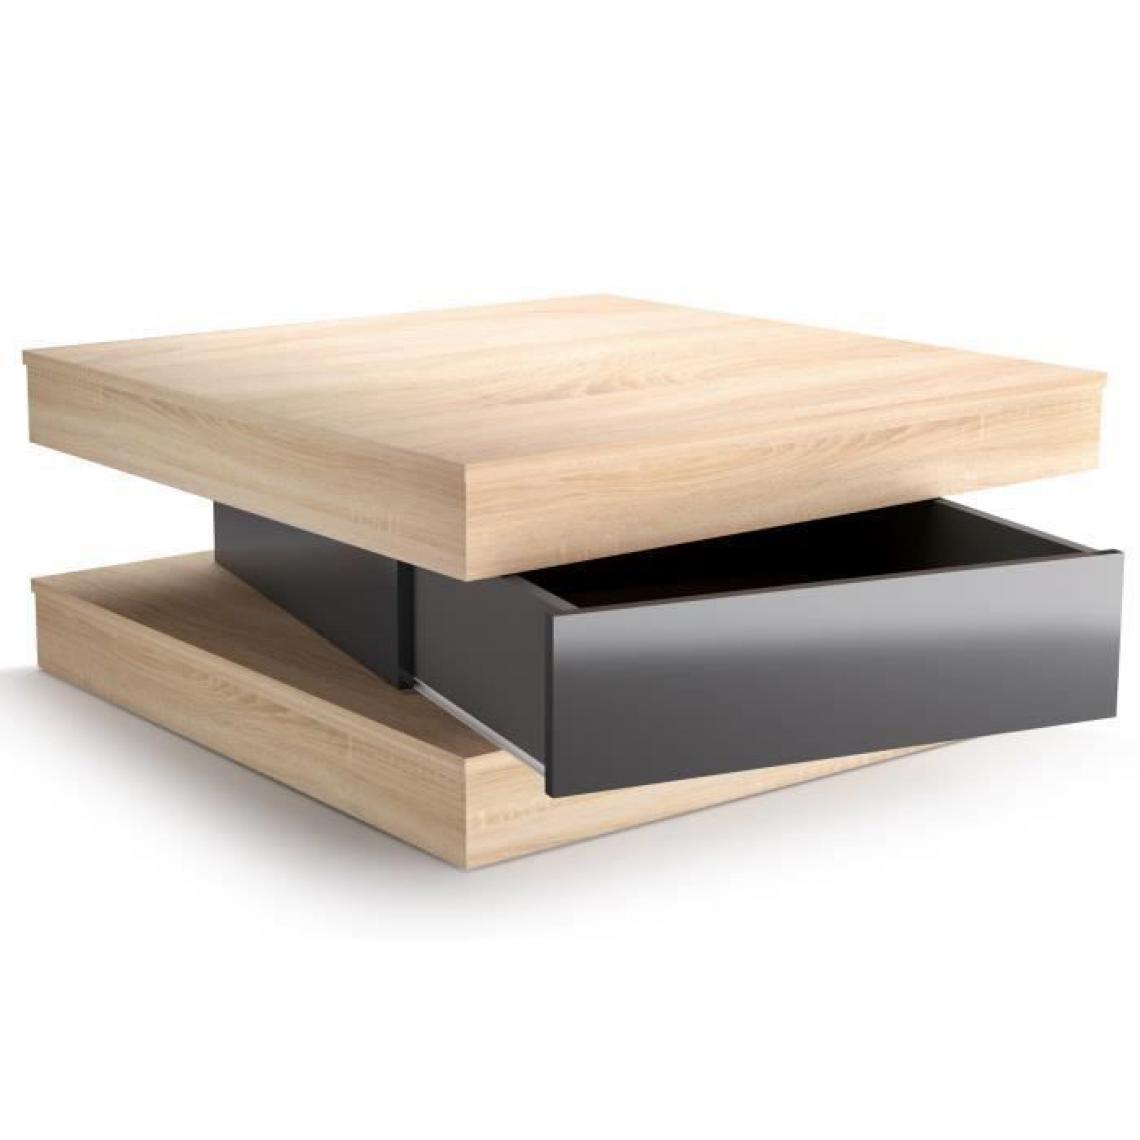 Sans Marque - FIXY Table basse carree style contemporain decor chene et gris brillant - L 80 x l 80 cm - Tables basses